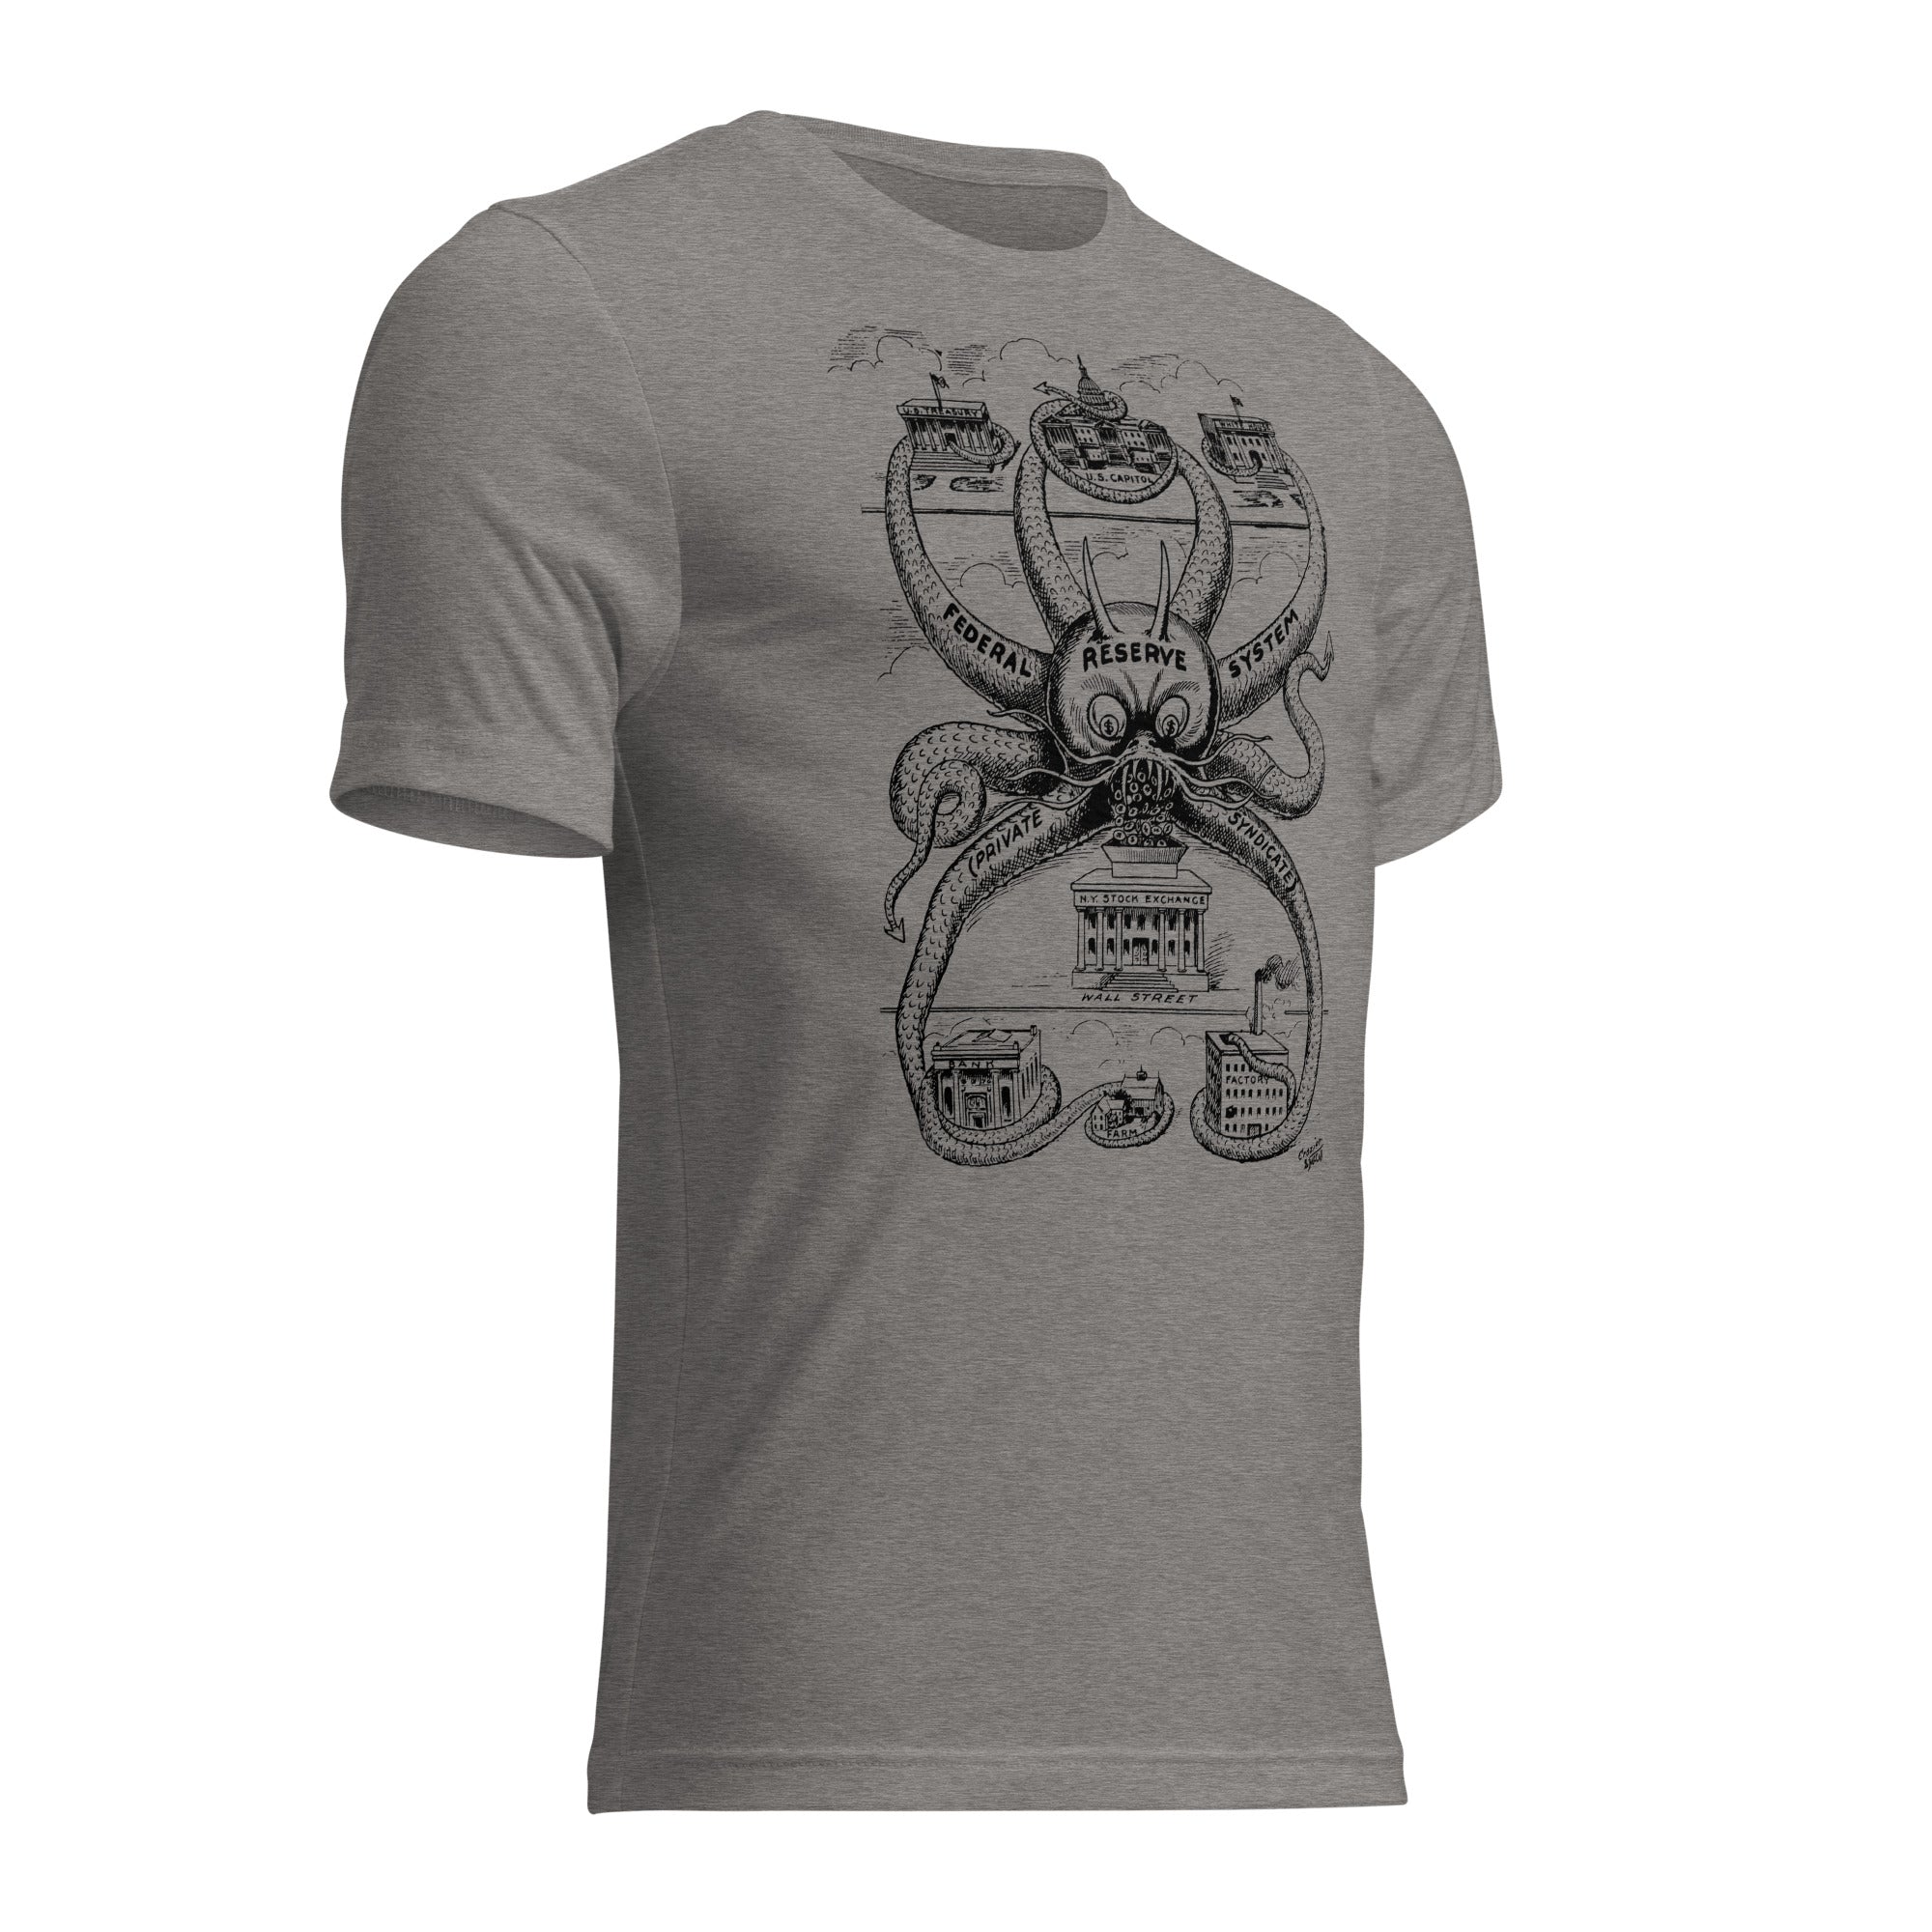 Federal Reserve Octopus Vintage Tri-Blend T-Shirt